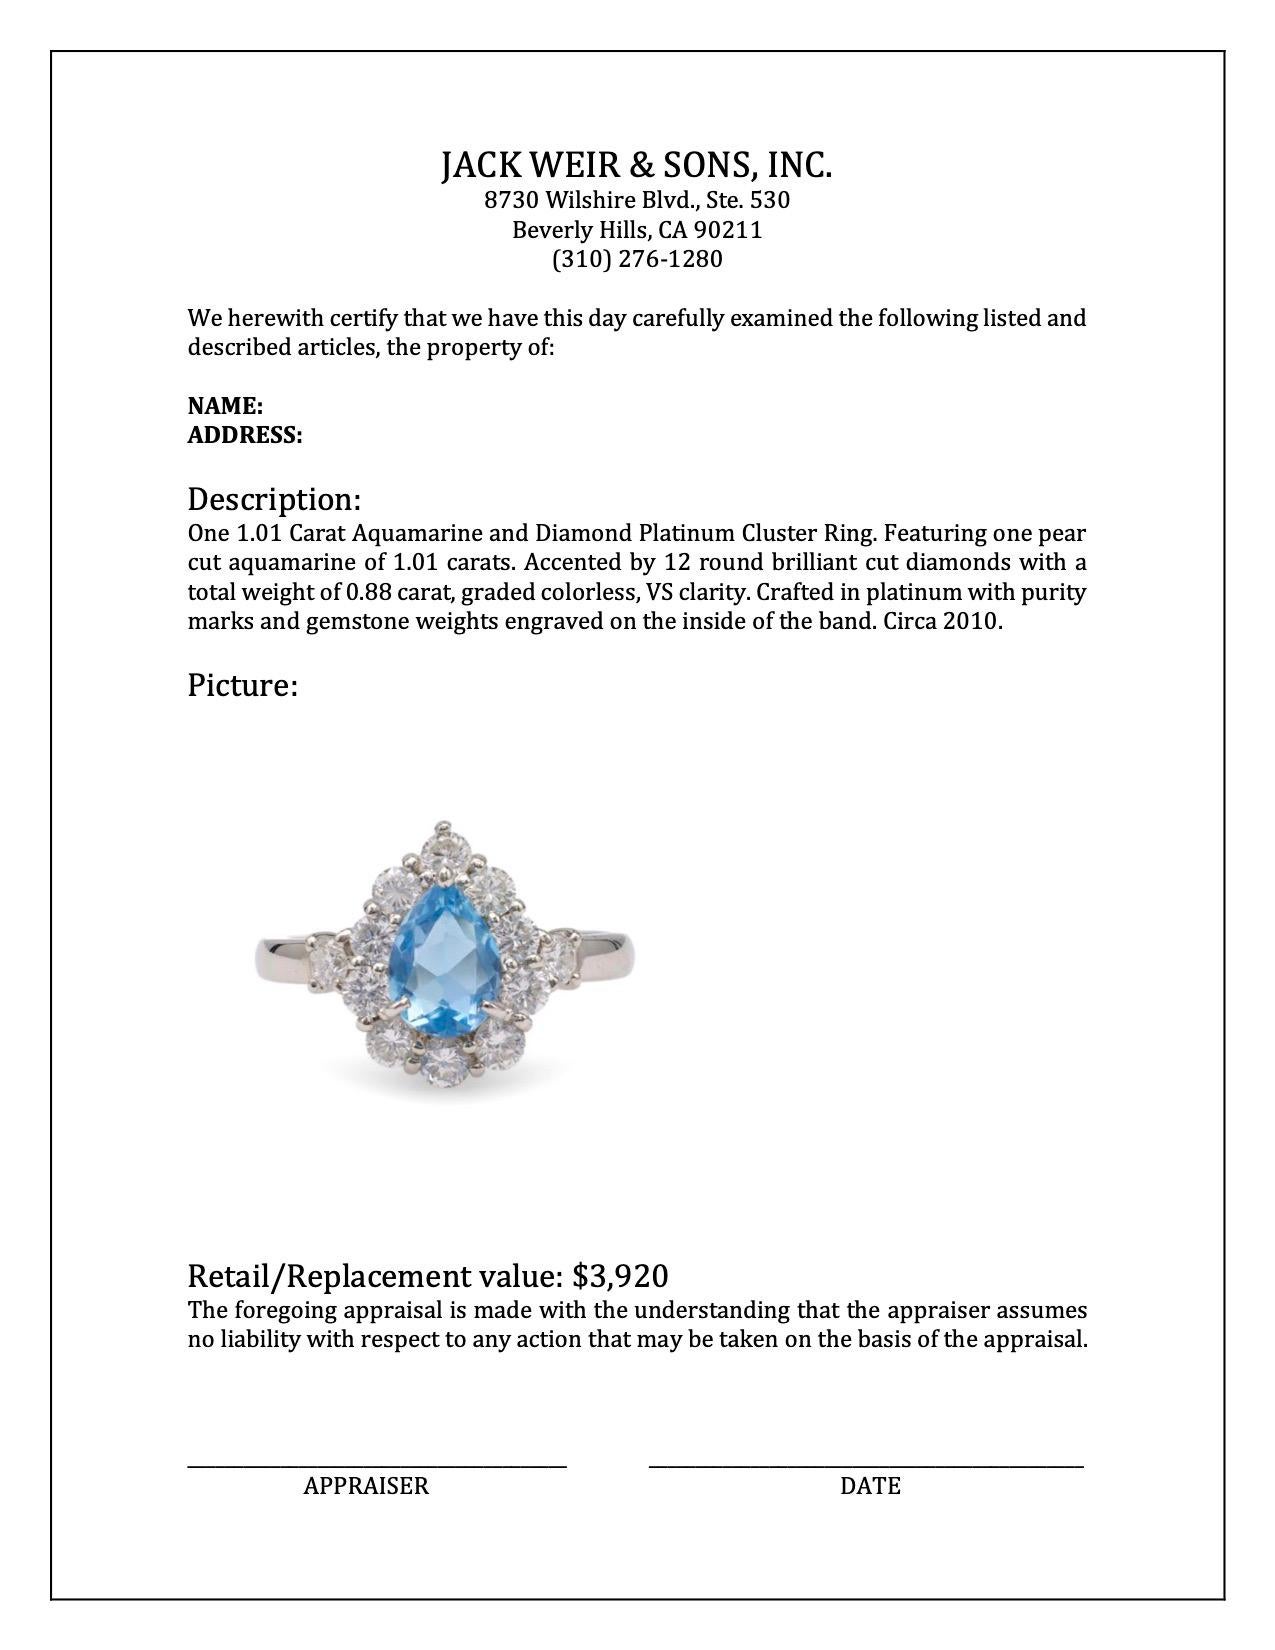 1.01 Carat Aquamarine and Diamond Platinum Cluster Ring For Sale 1